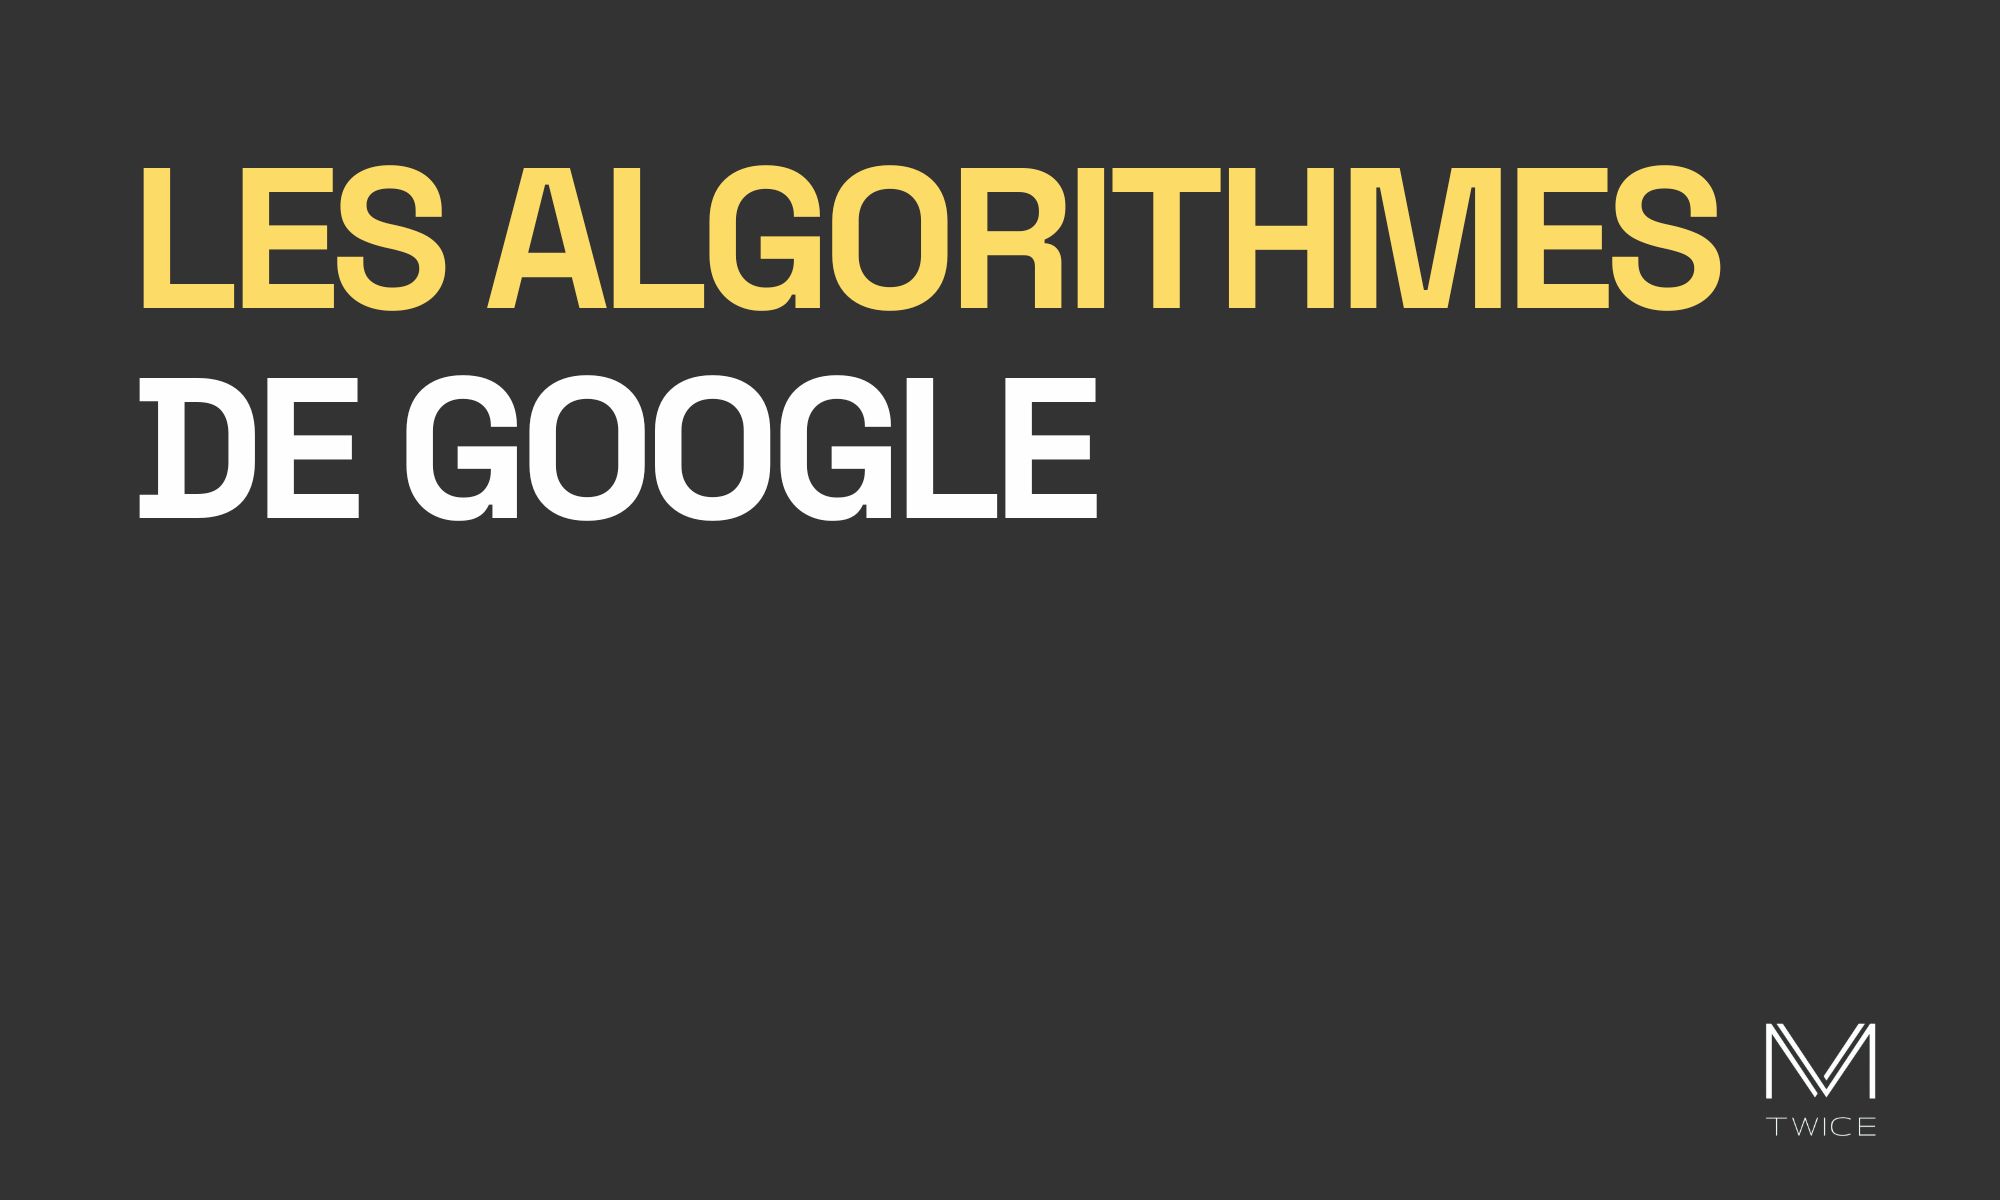 Image de couverture sur fond noir et lettres blanches de l'article de blog 'Les algorithmes de Google' avec le logo de M-TWICE en bas à droite.